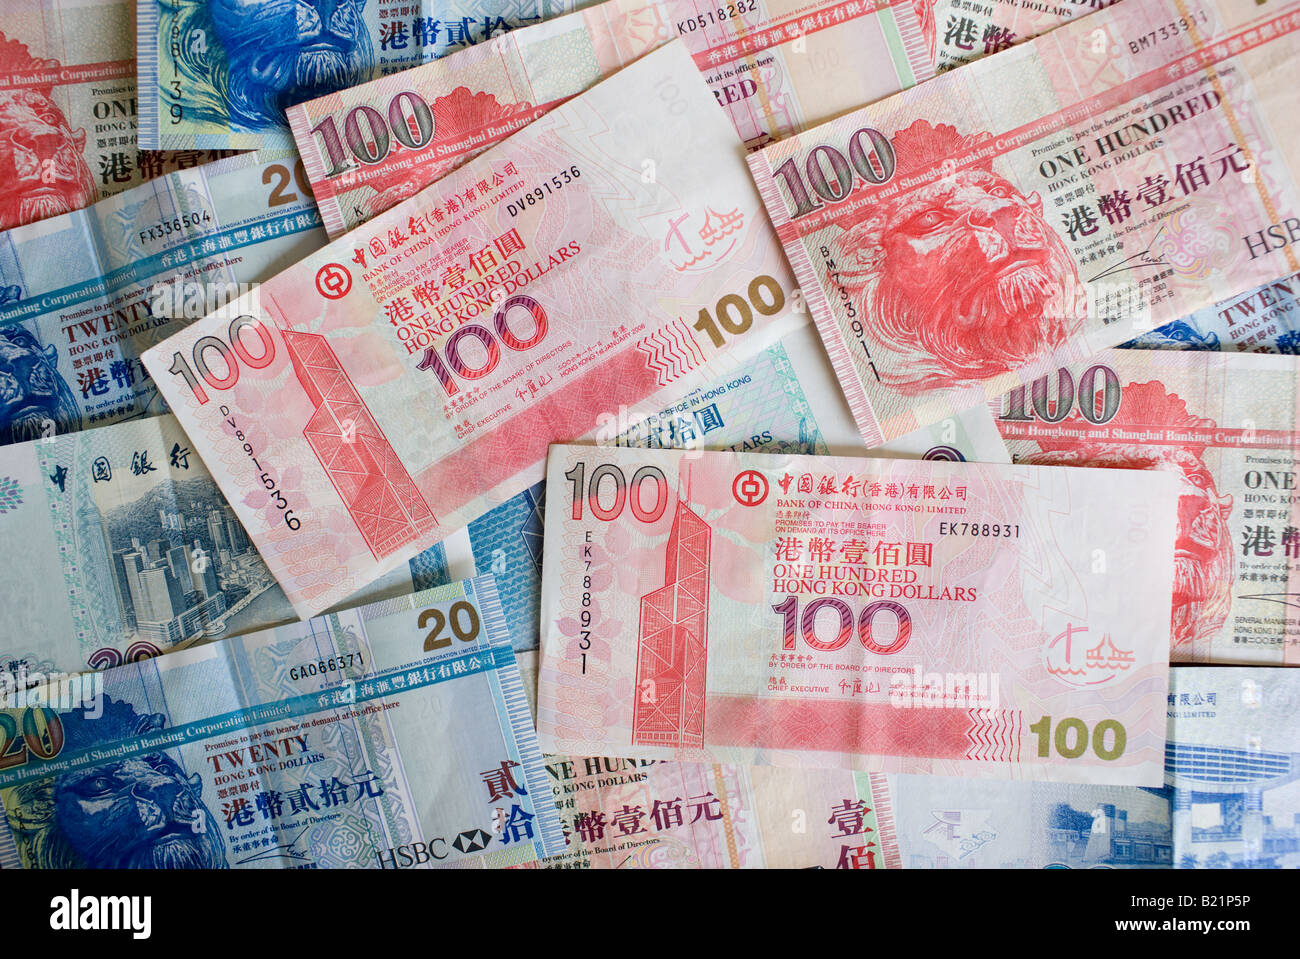 Hong Kong Dollar bills feature image of the Bank of China Building Hong Kong China Stock Photo